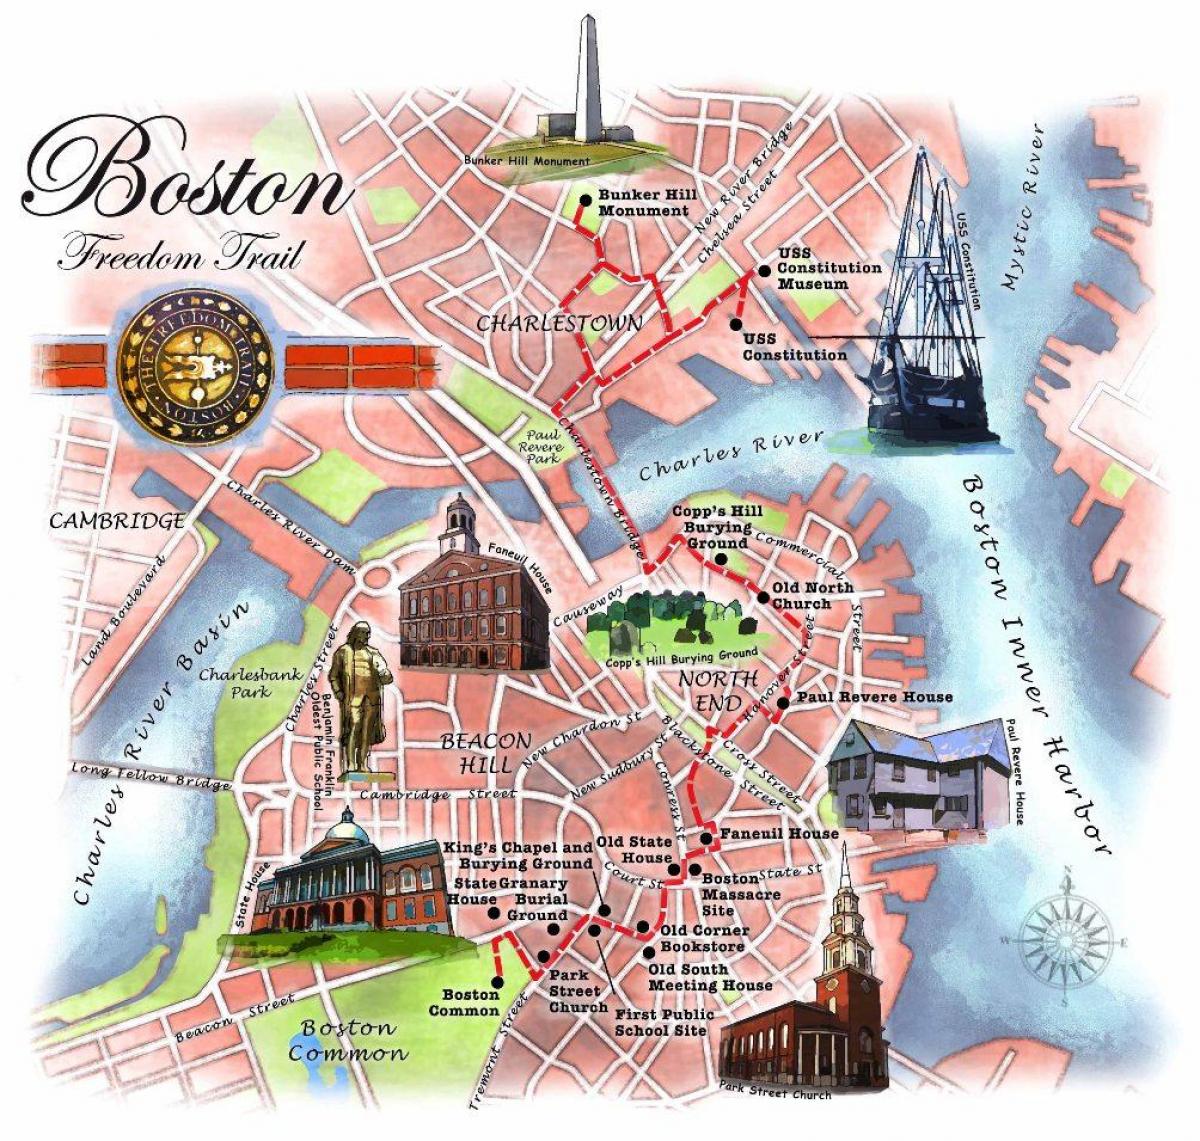 χάρτης της Boston freedom trail